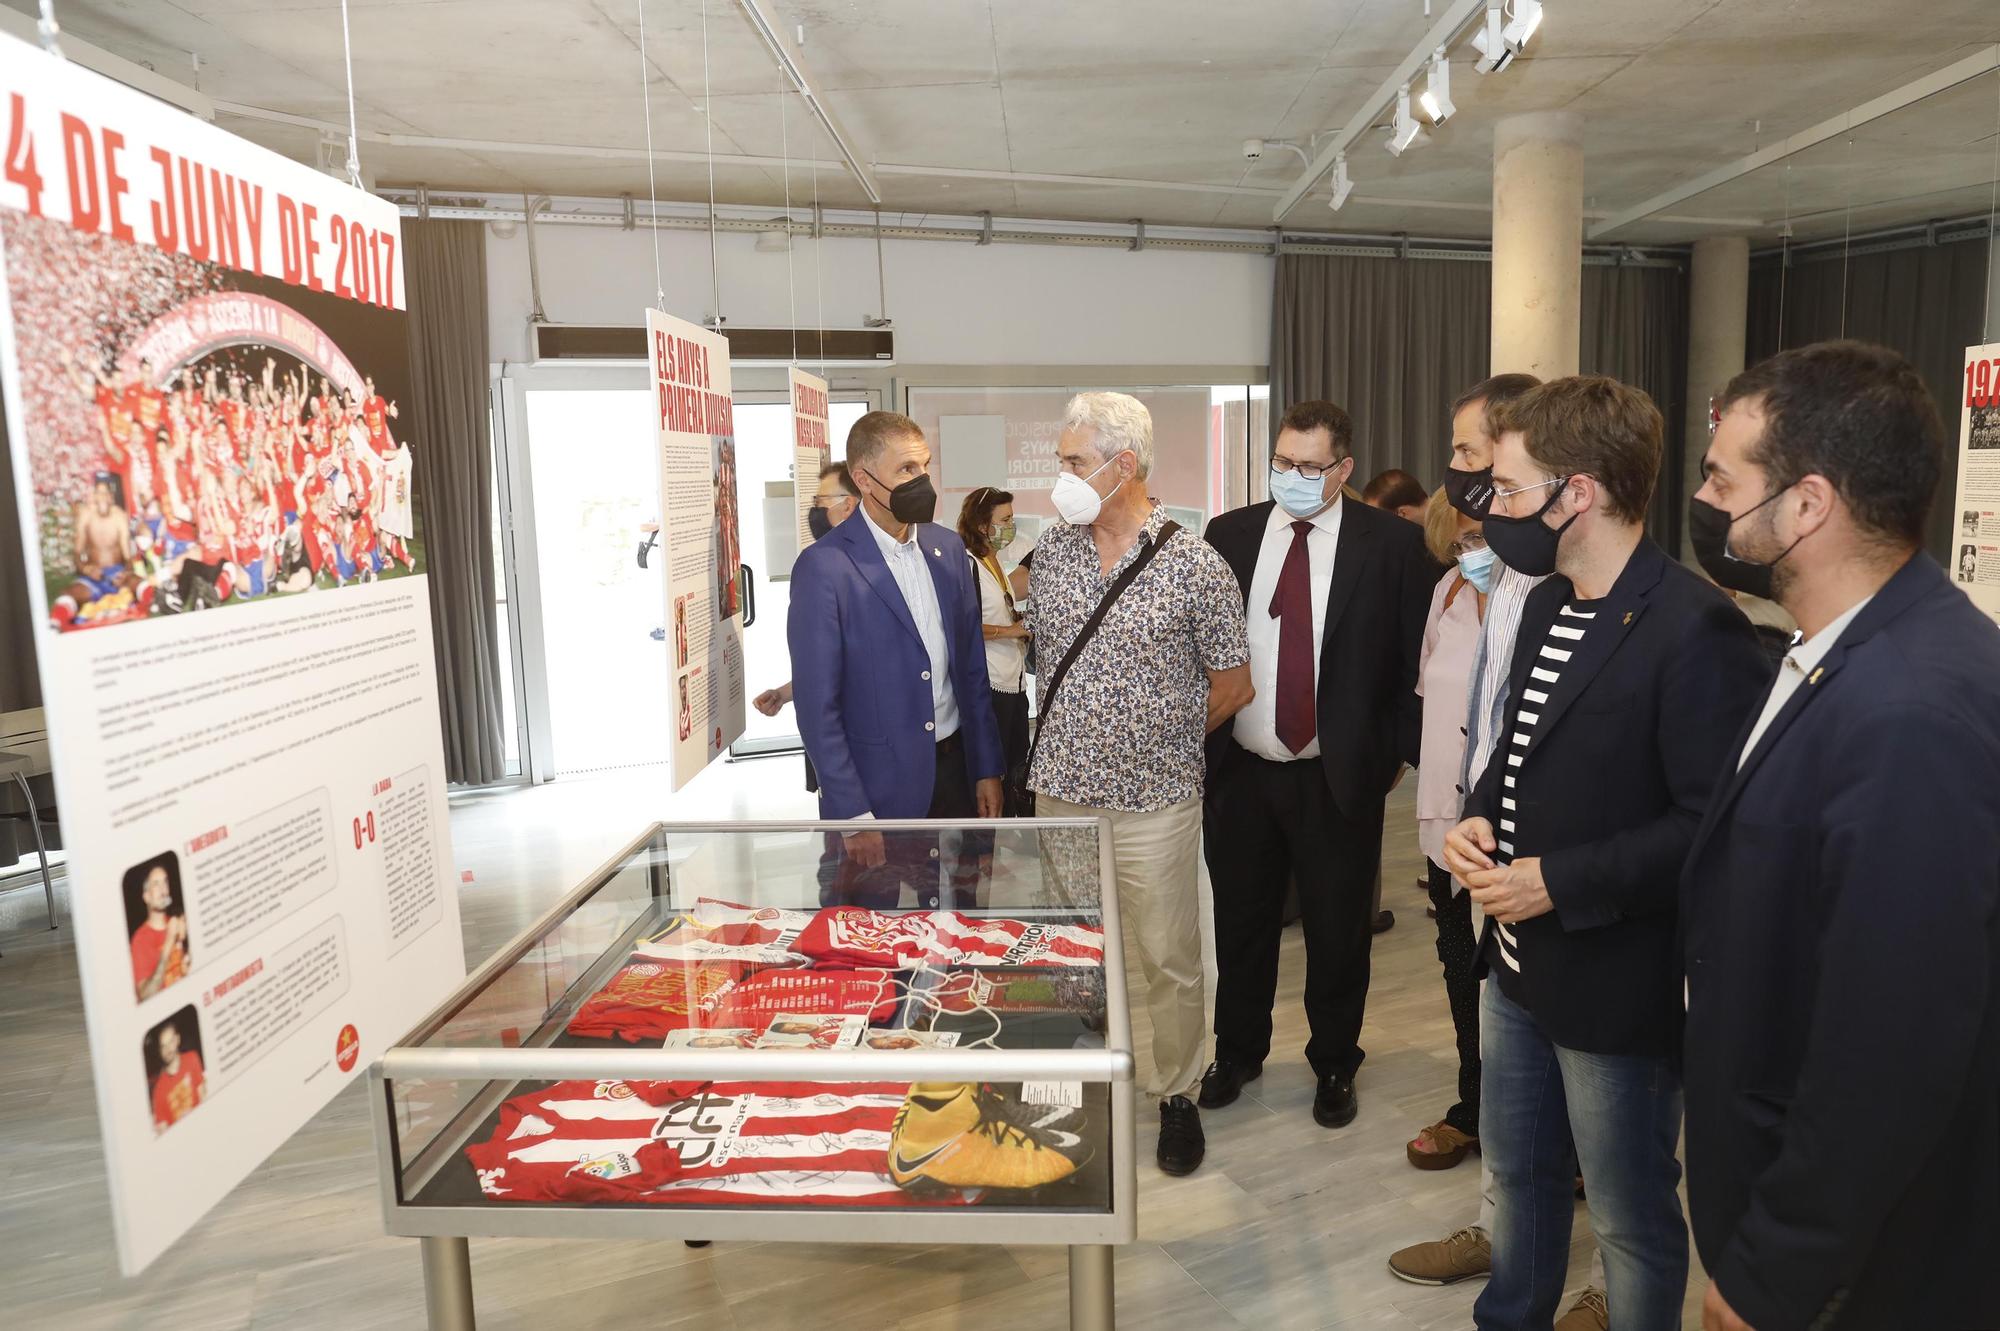 Exposició dels 90 anys d'història del Girona FC